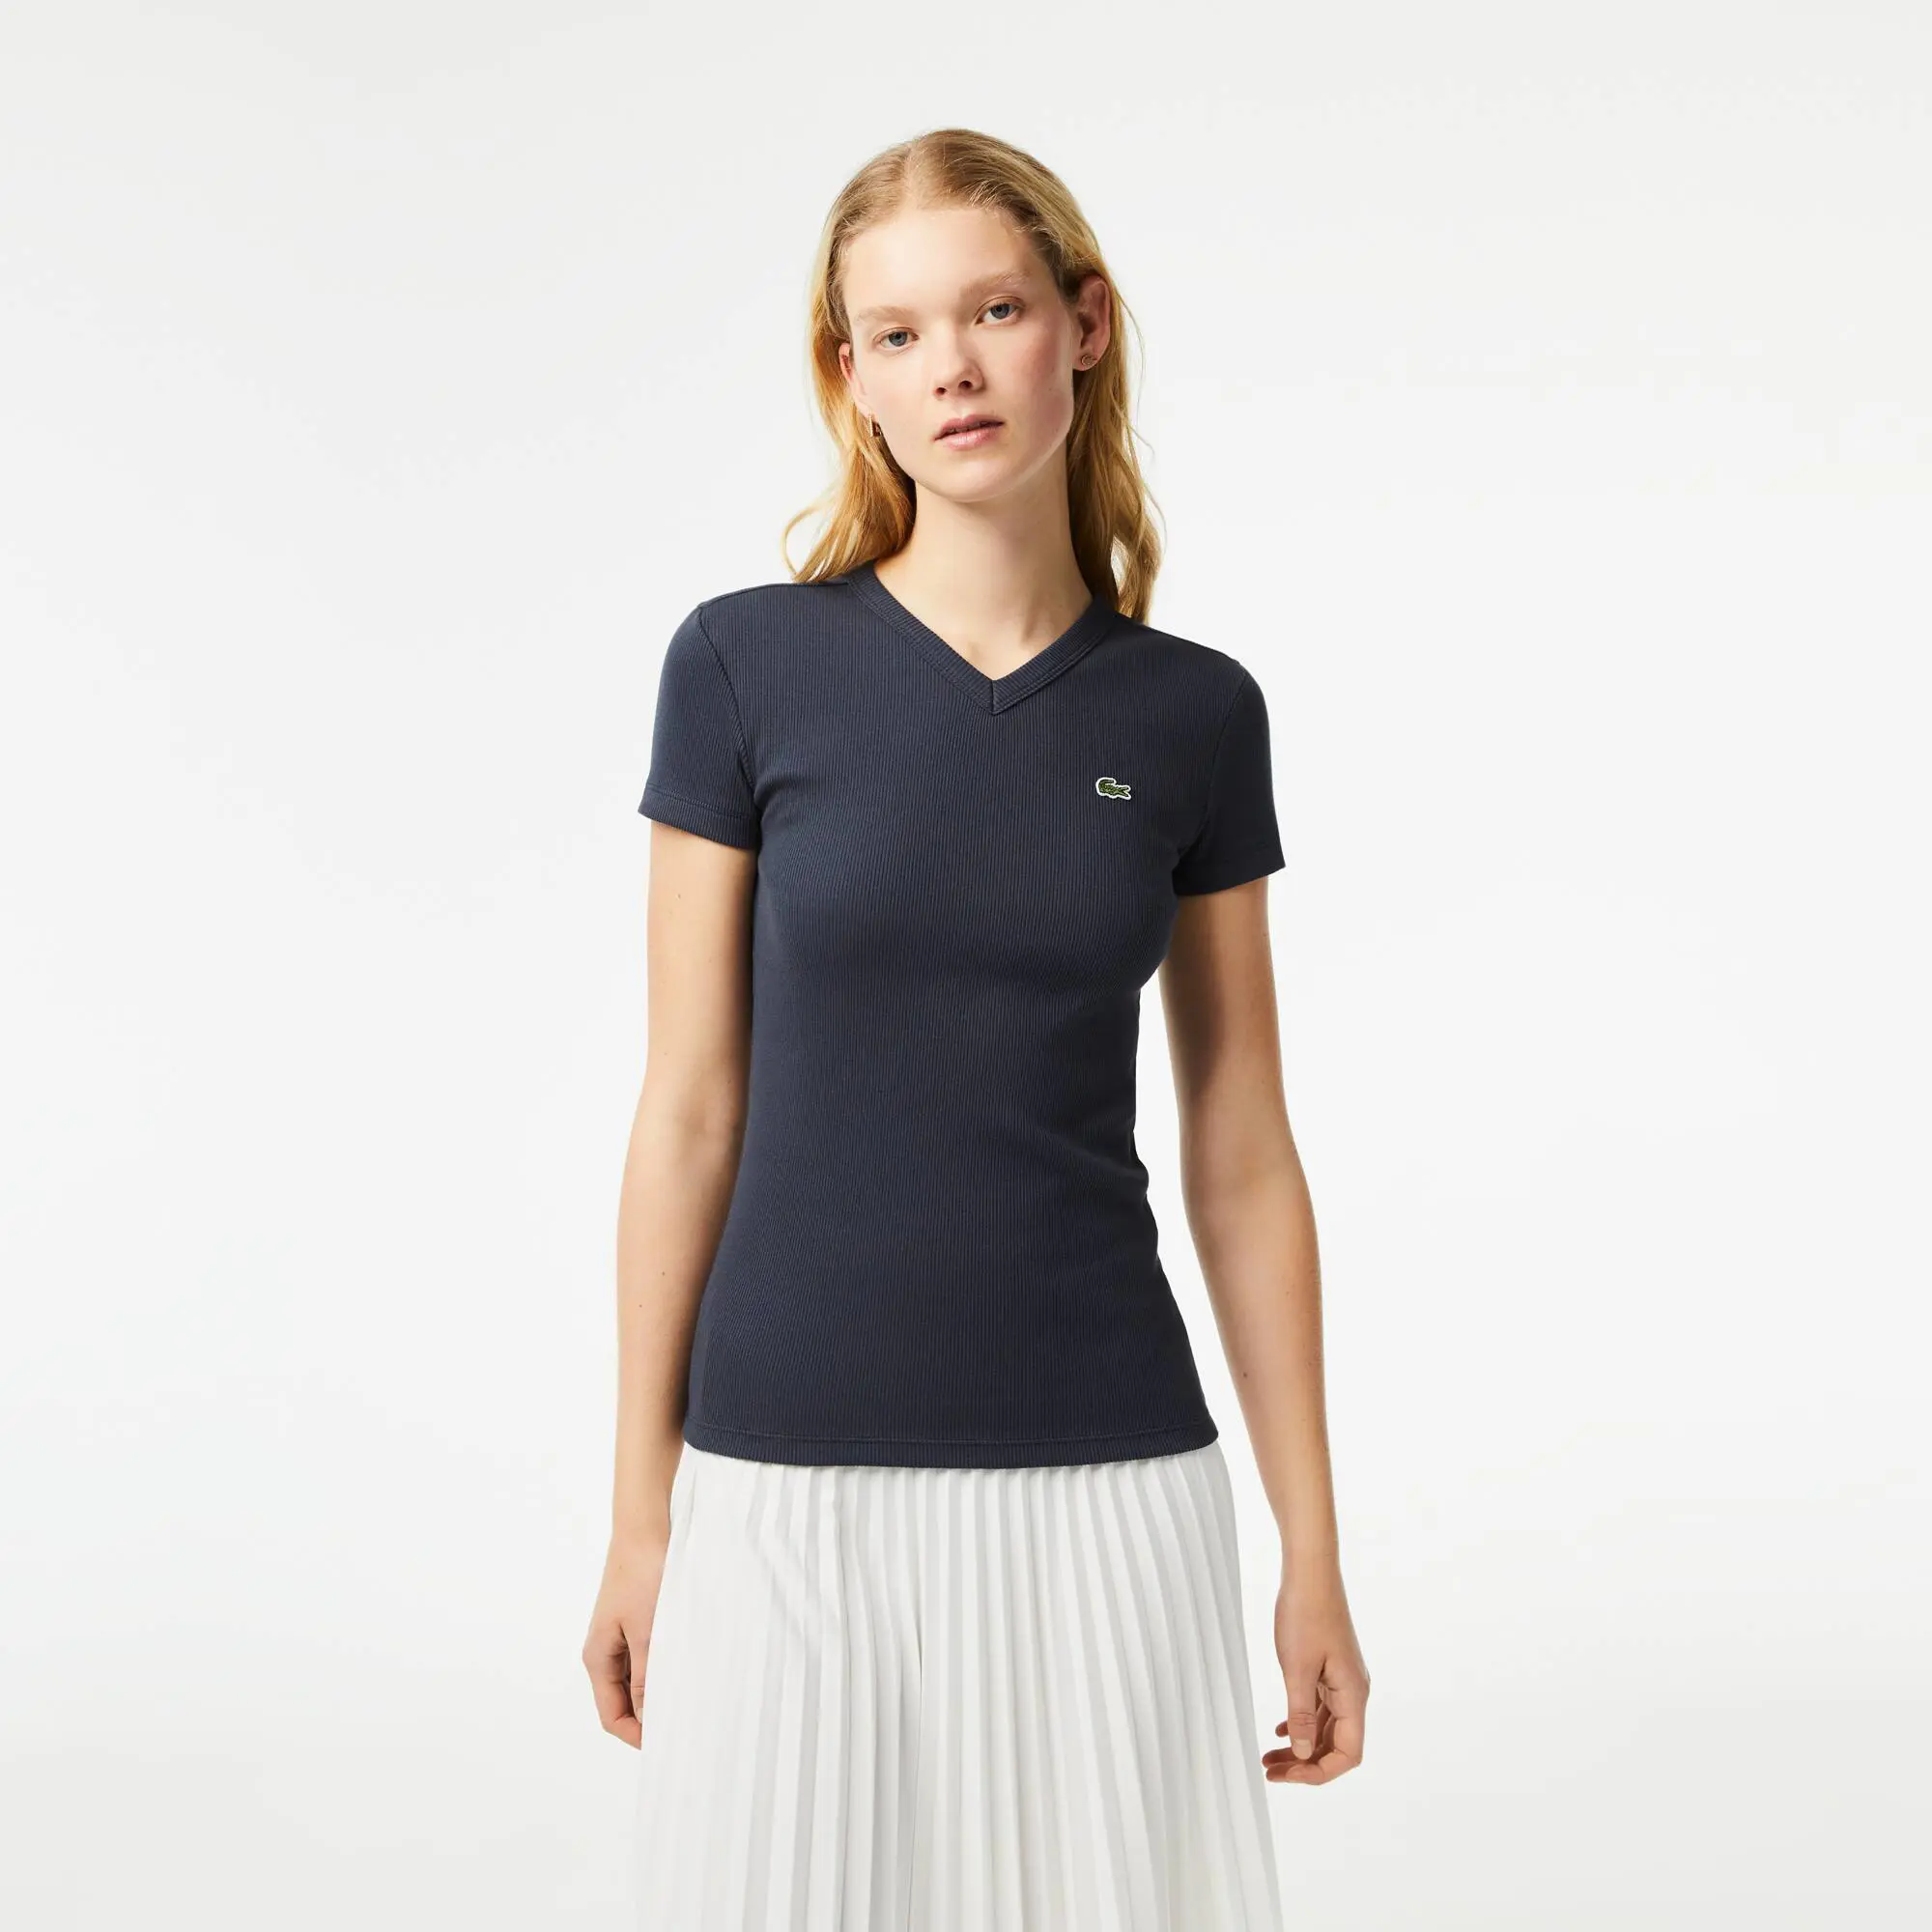 Lacoste Women’s Lacoste Slim Fit Organic Cotton V-neck T-shirt. 1